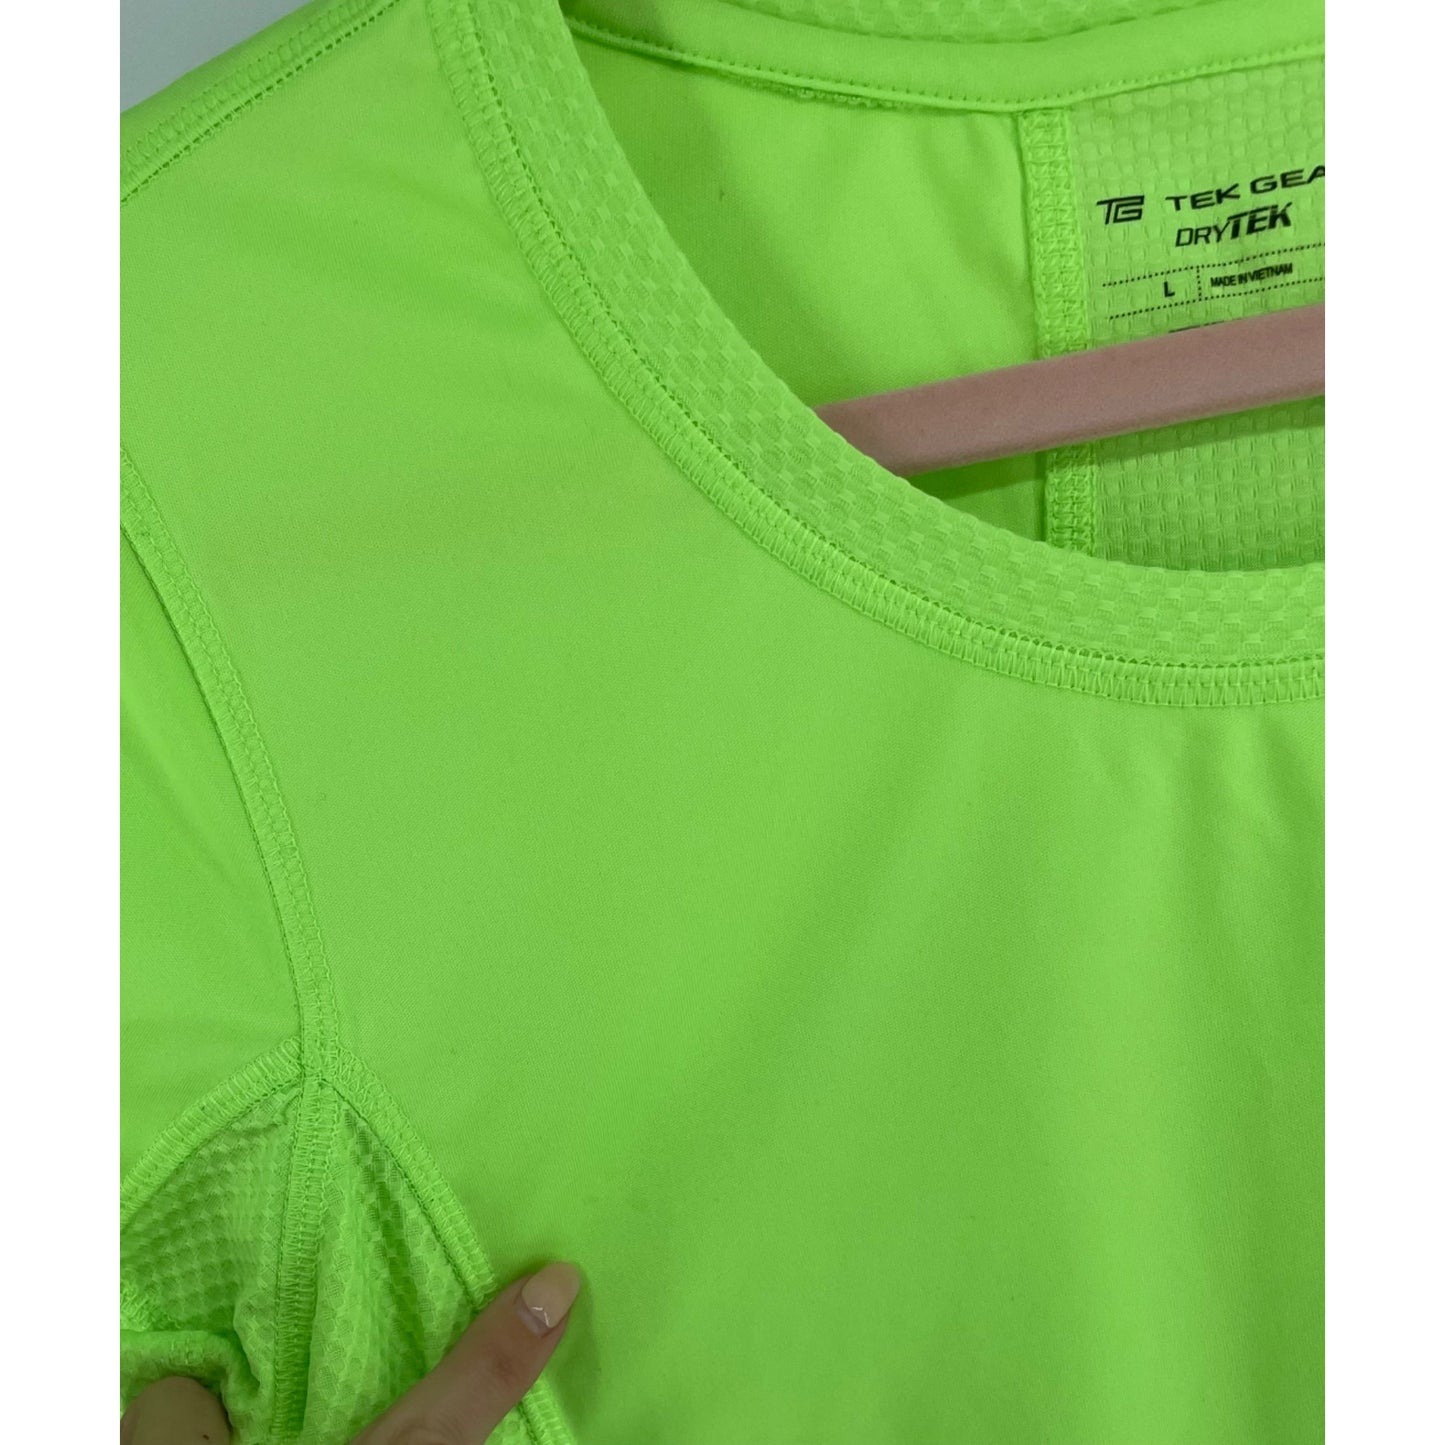 Tek Gear DryTEK Women's Size Large Neon Green/Chartreuse Crew Neck Workout T-Shirt